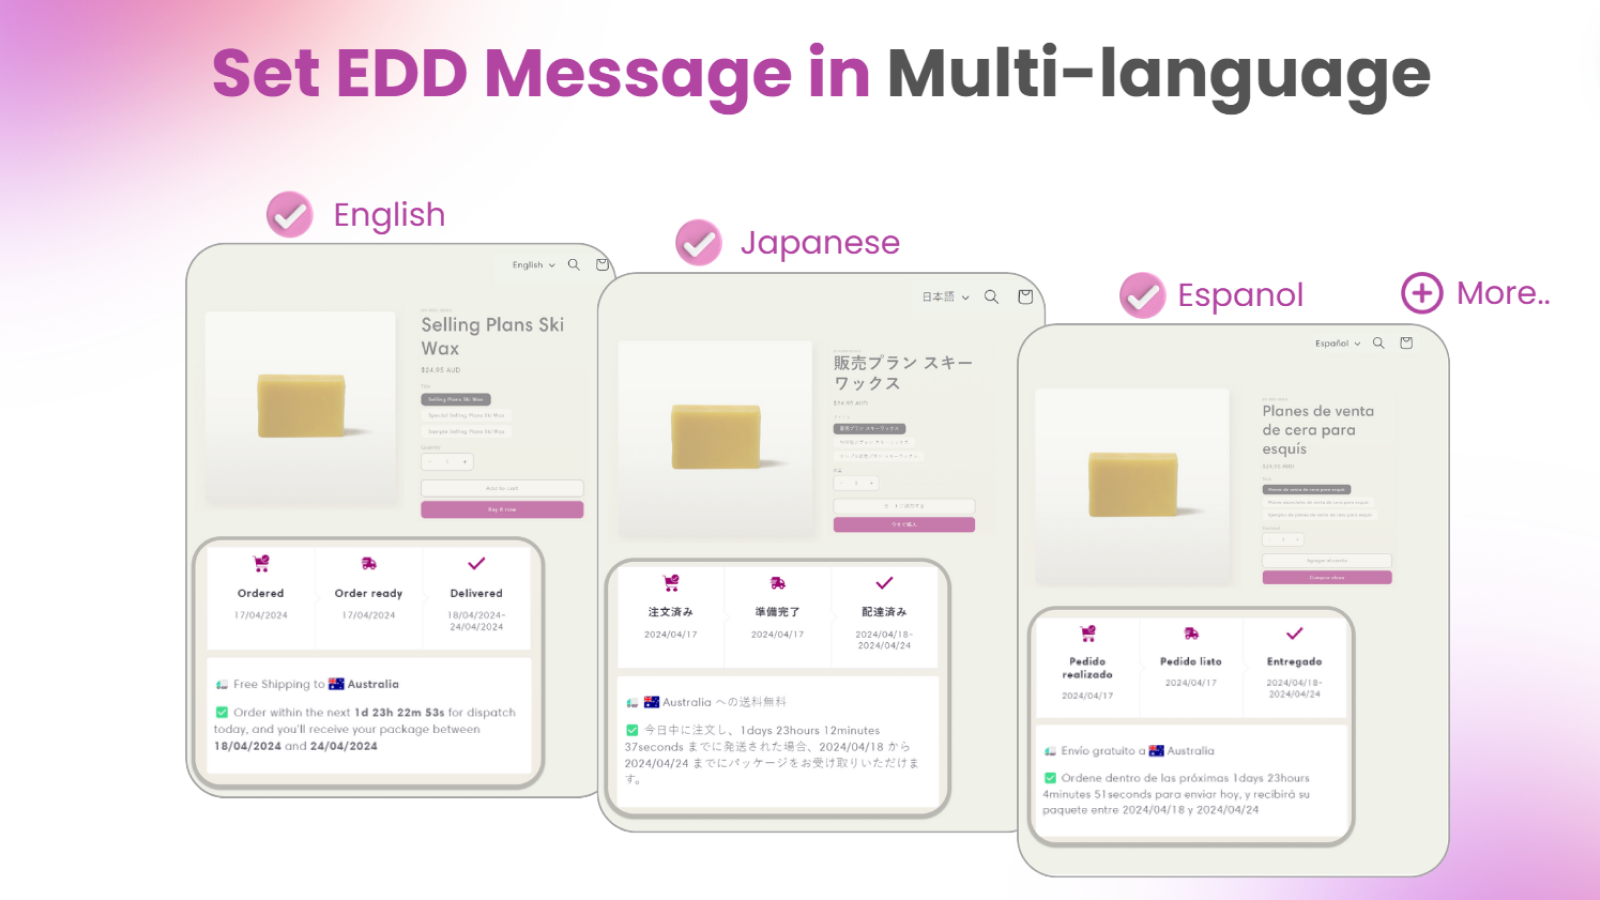 Establece el mensaje EDD en varios idiomas